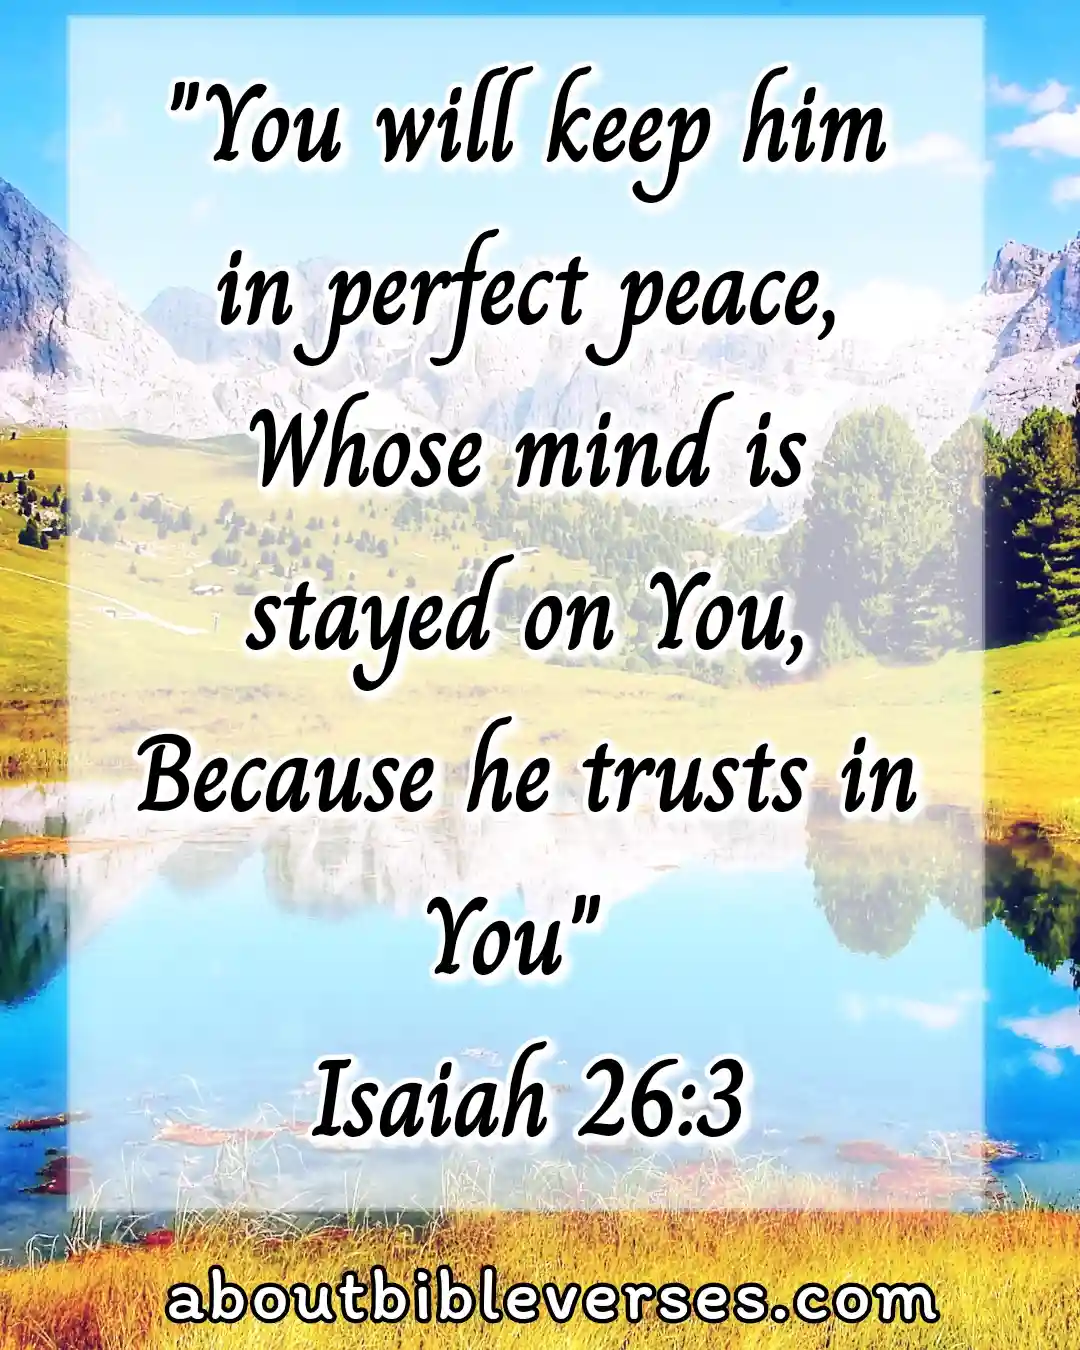 Today bible verse (Isaiah 26:3)